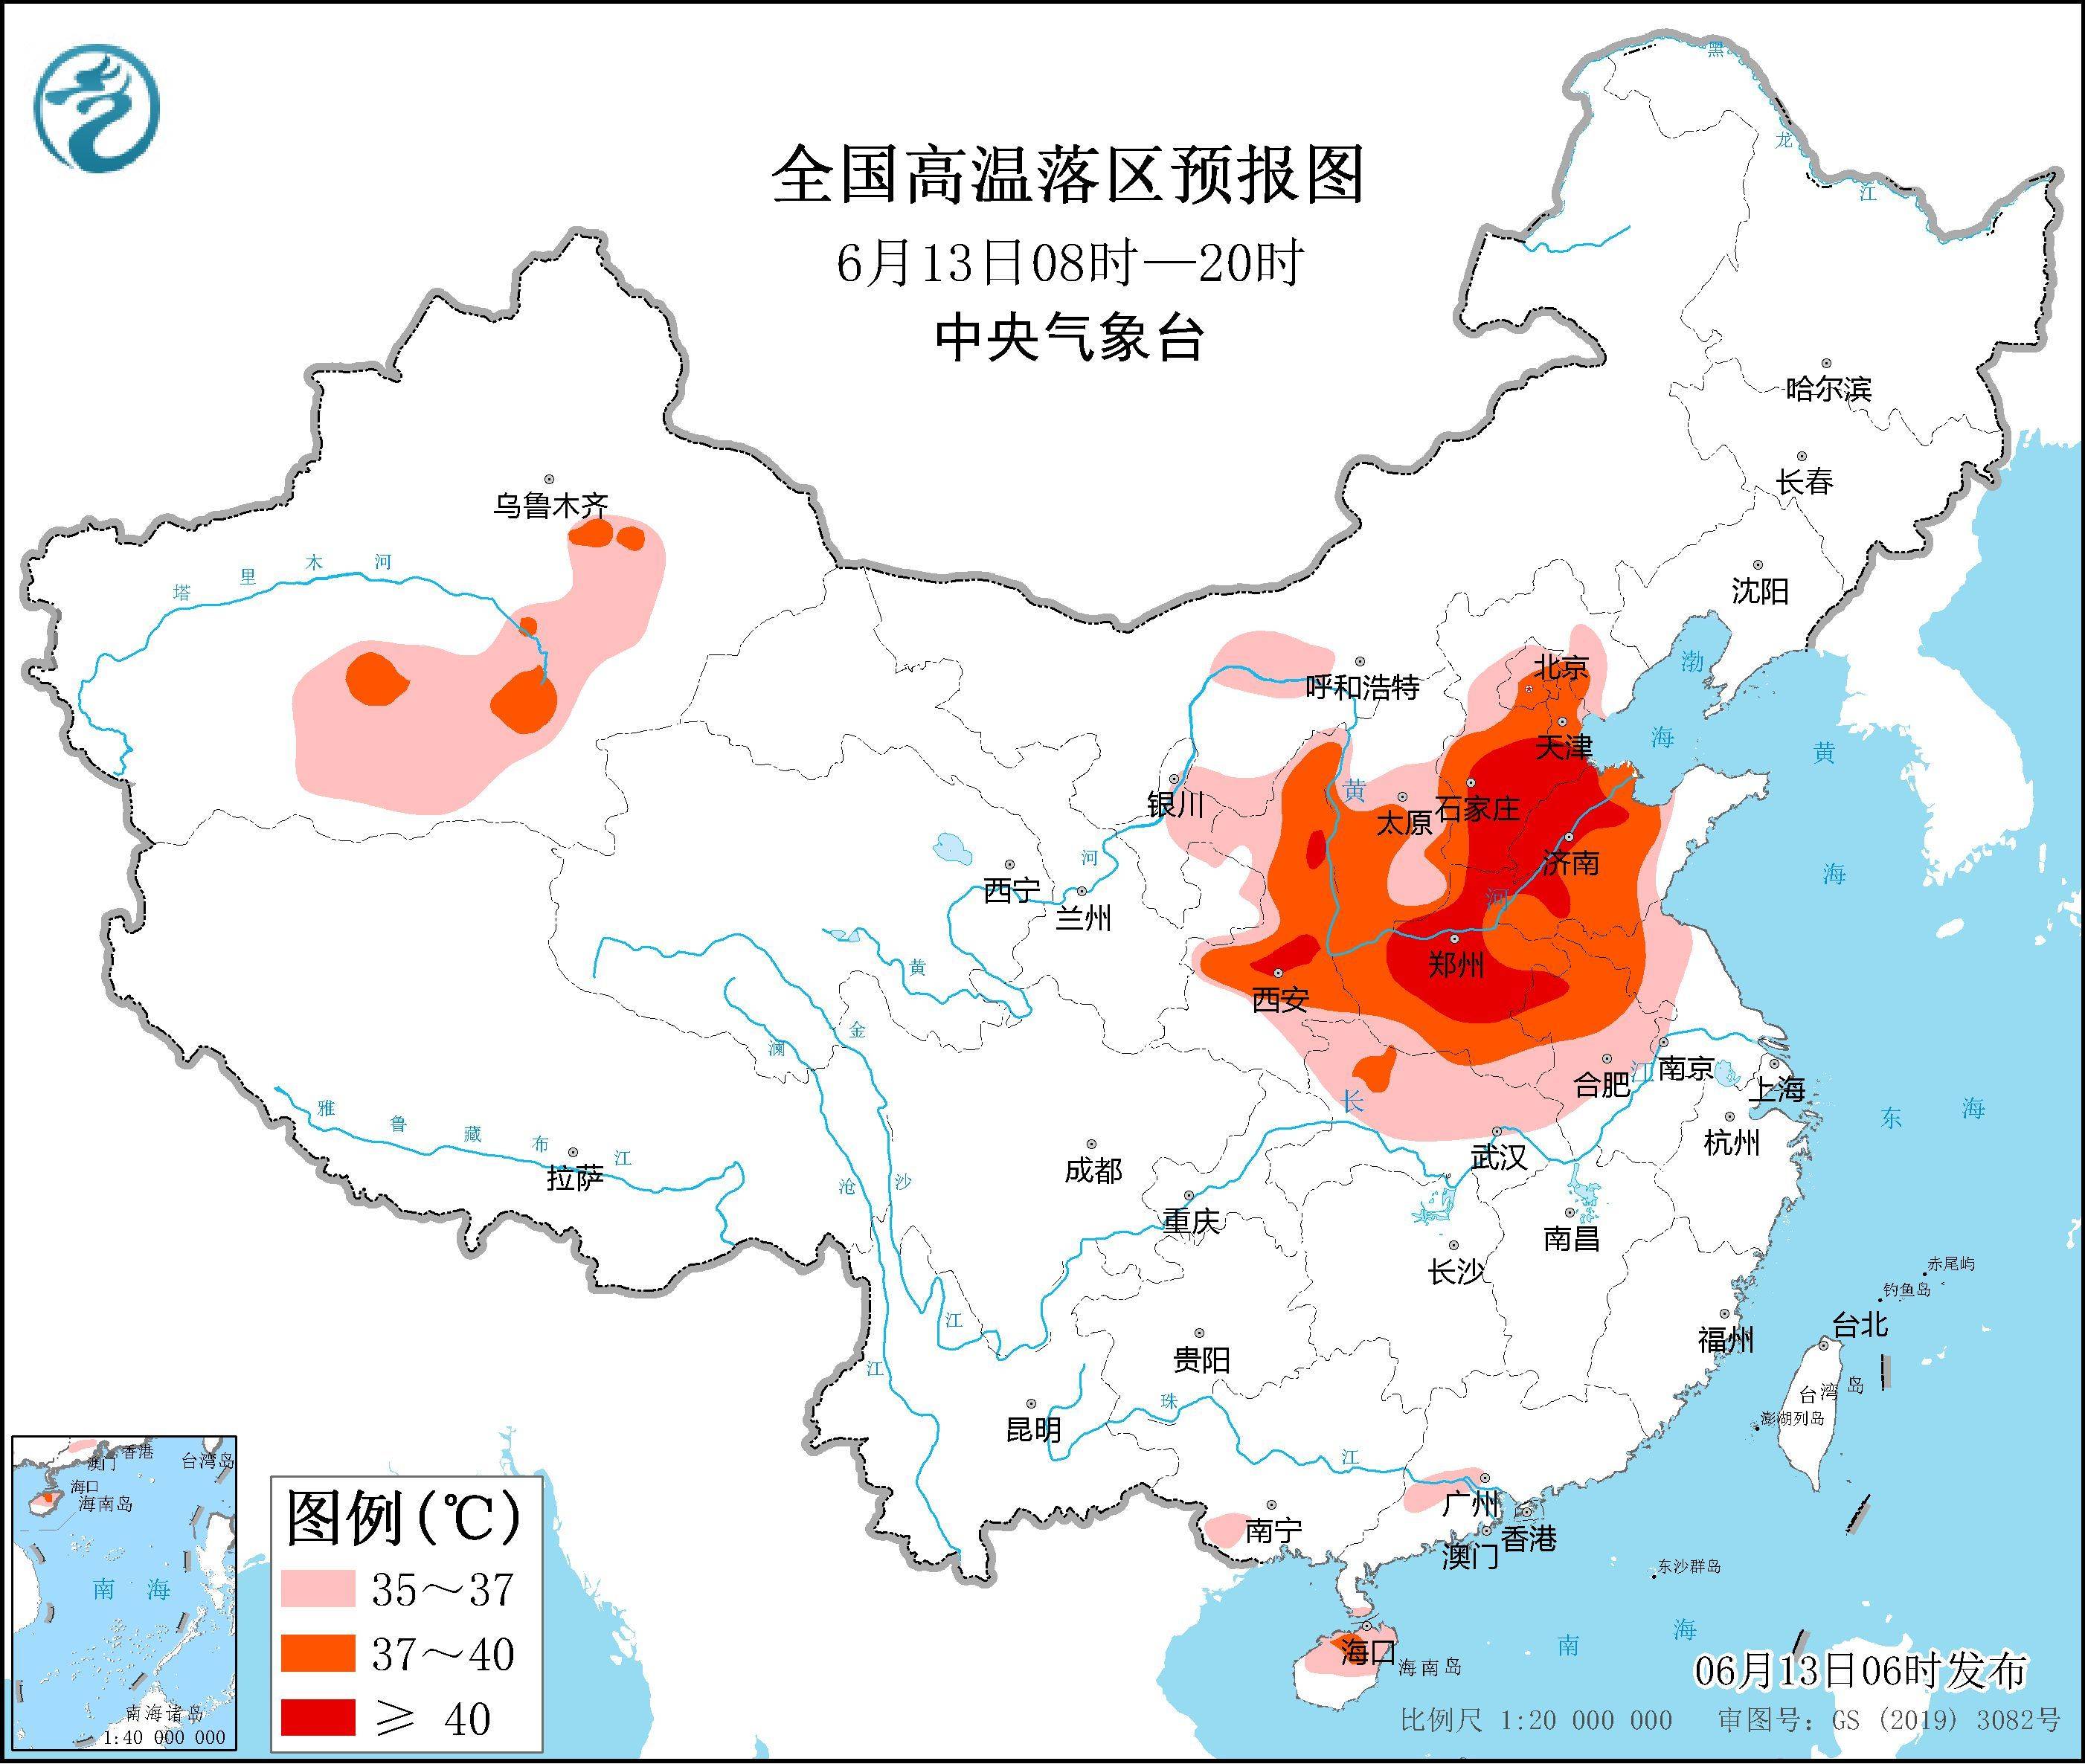 中央气象台连发三预警,广东这些地区受影响